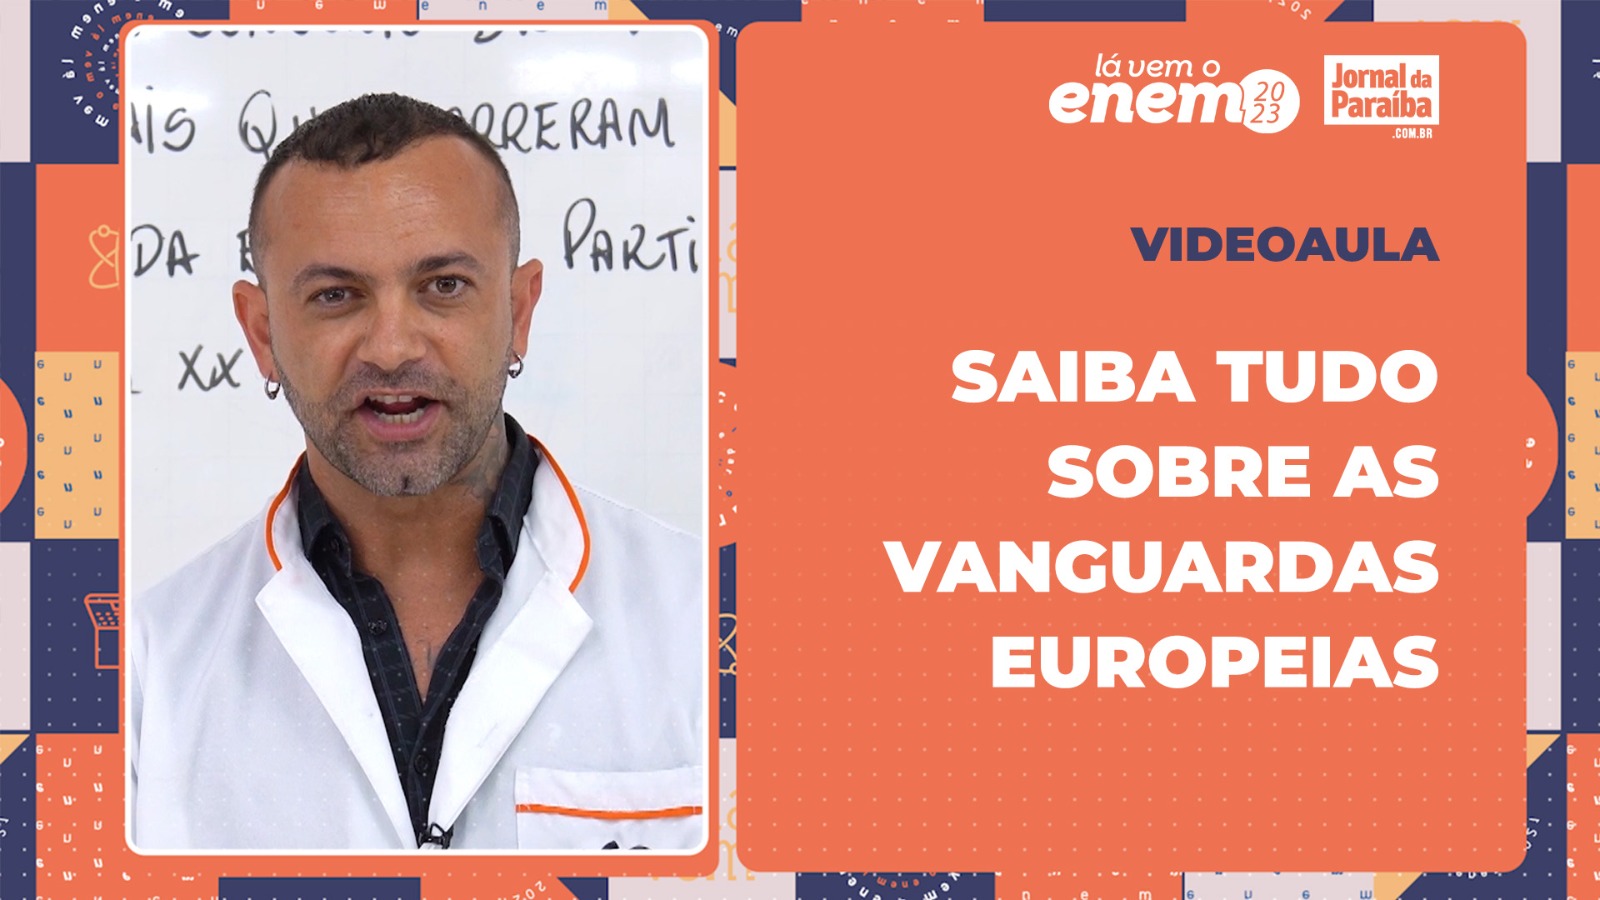 Professor Rodrigo Paes apresenta videoaula cobre vanguardas europeias no Enem